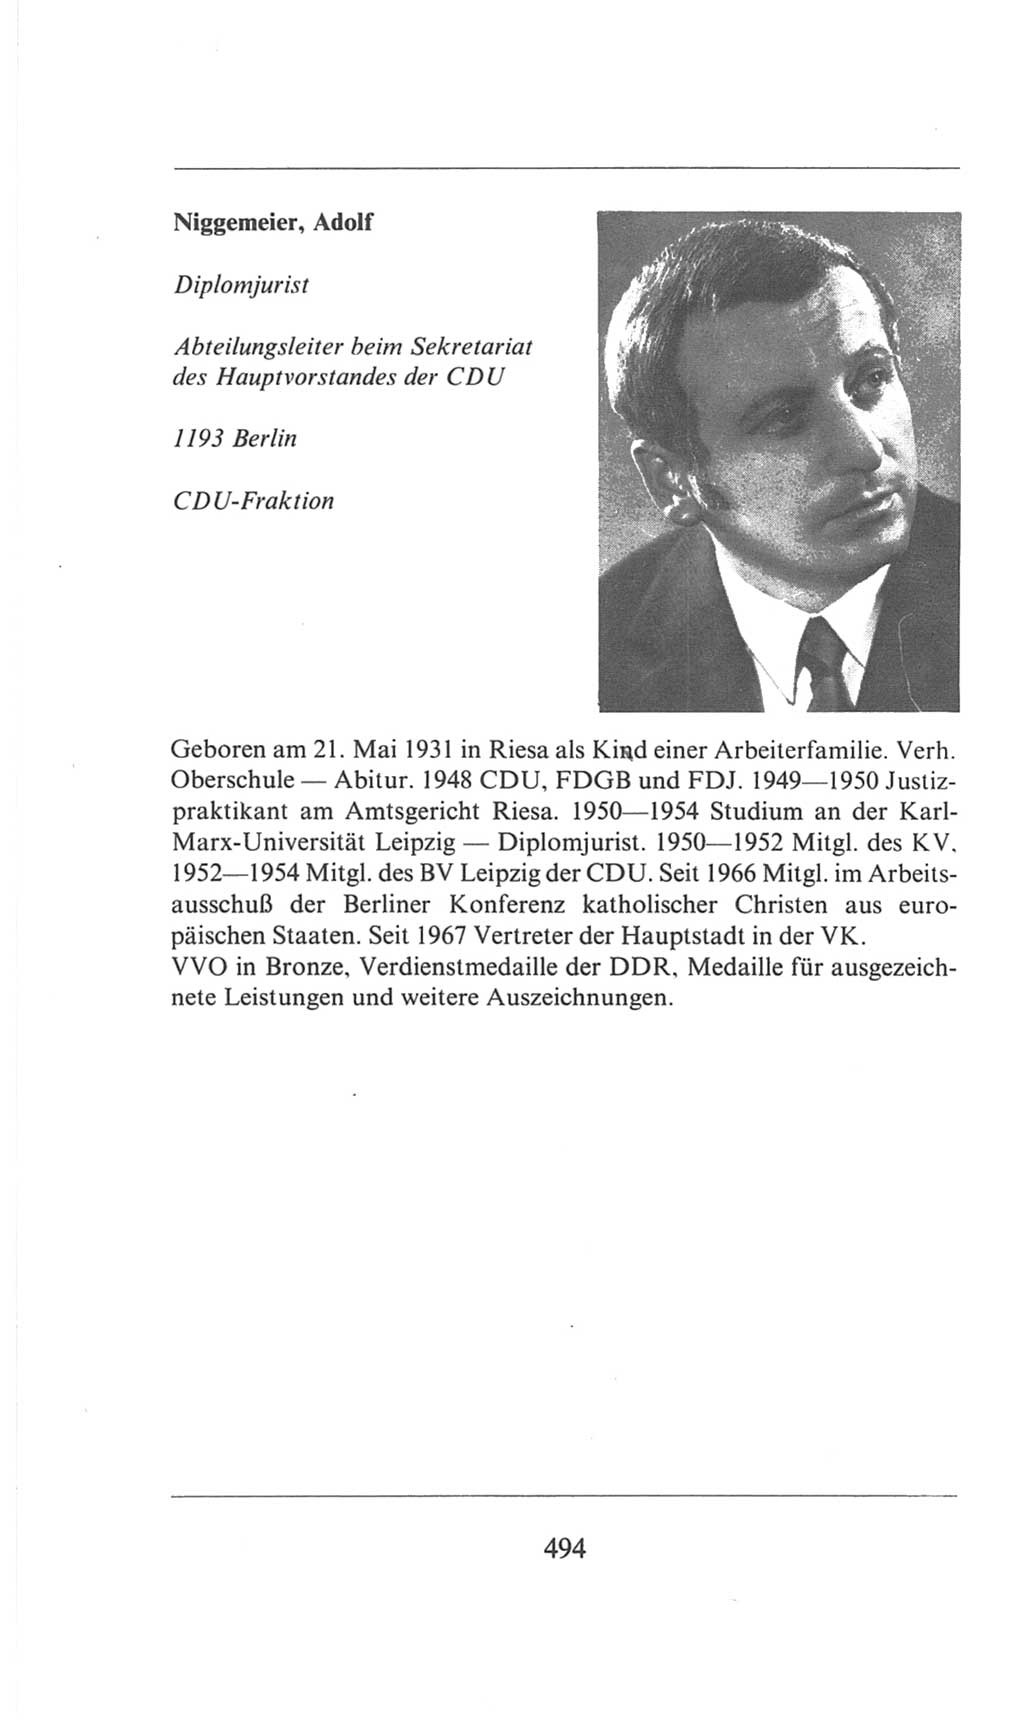 Volkskammer (VK) der Deutschen Demokratischen Republik (DDR), 6. Wahlperiode 1971-1976, Seite 494 (VK. DDR 6. WP. 1971-1976, S. 494)